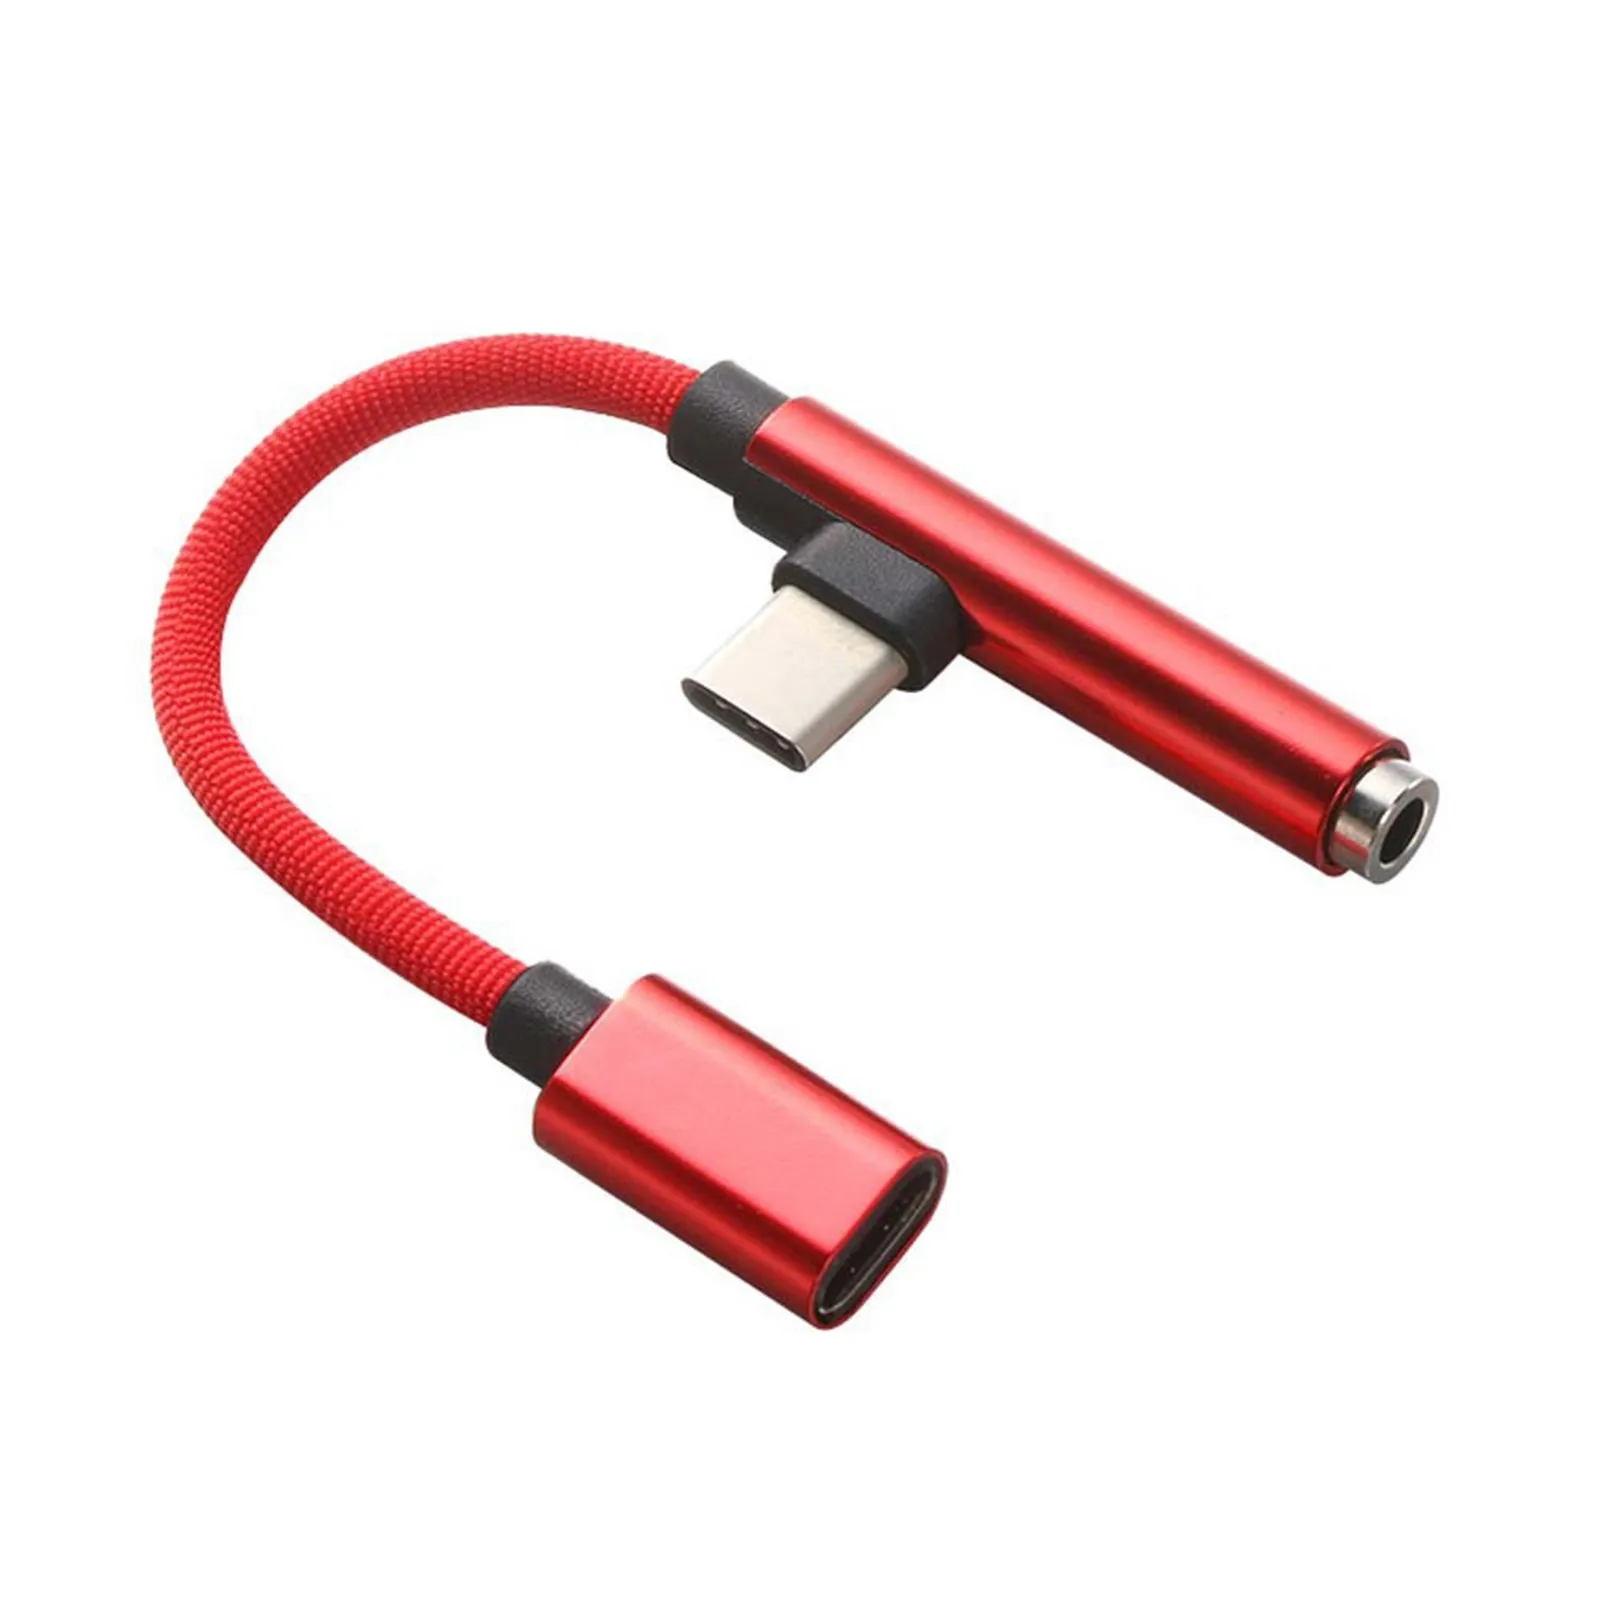 2 İn 1 USB Tip C İçin 3.5 mm Tip C Dişi Şarj Kulaklık Ses Jakı USB C şarj adaptörü Kablosu Samsung Xiaomi OPPO